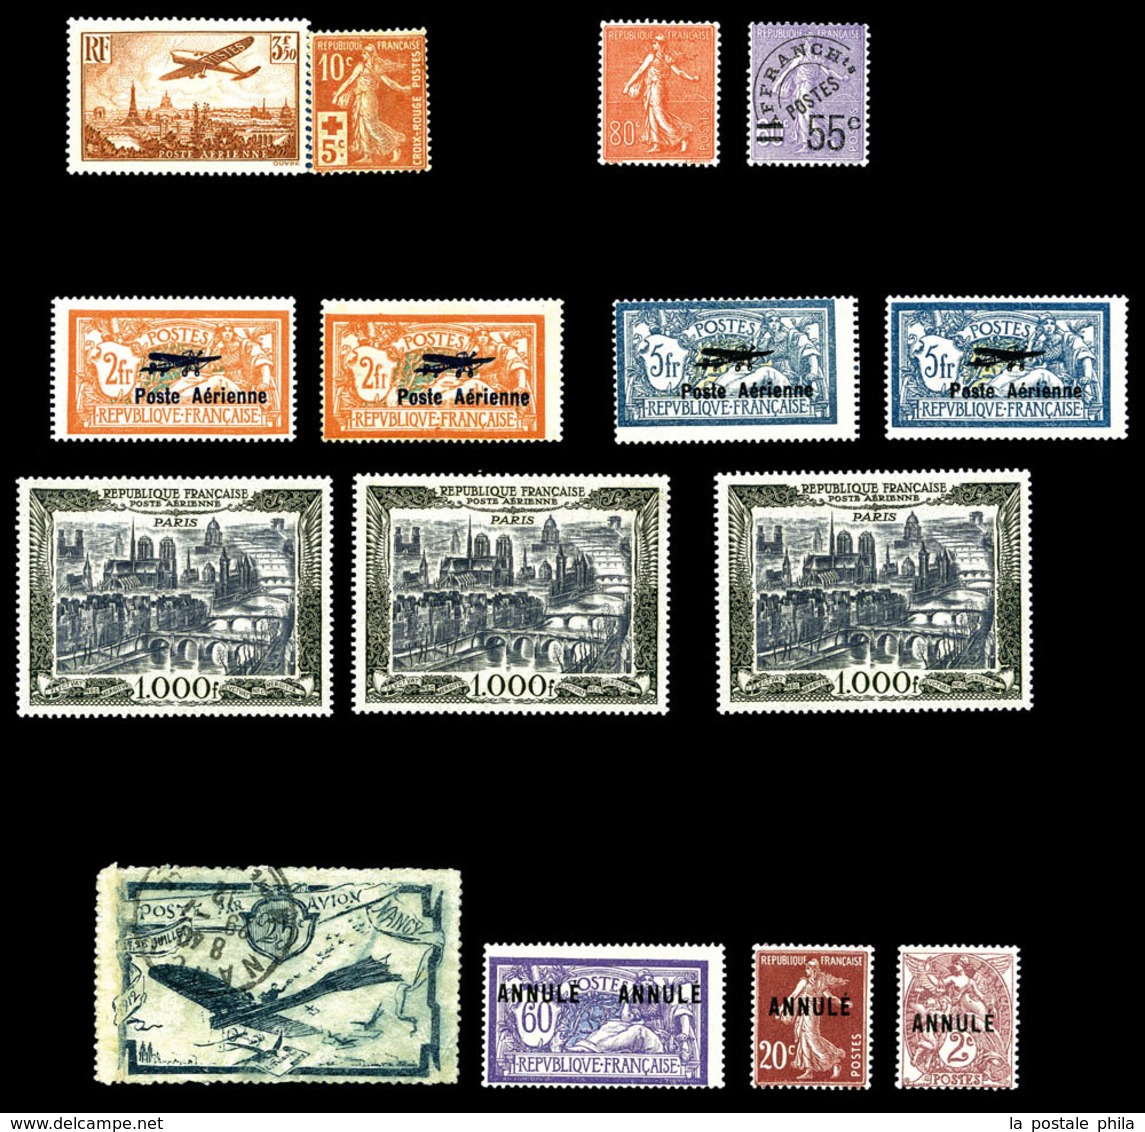 N 1900/1940 , Poste, PA, Blocs, Taxe: Stock de timbres neufs * (qualité variable), comprenant de bonnes valeurs dont Mer